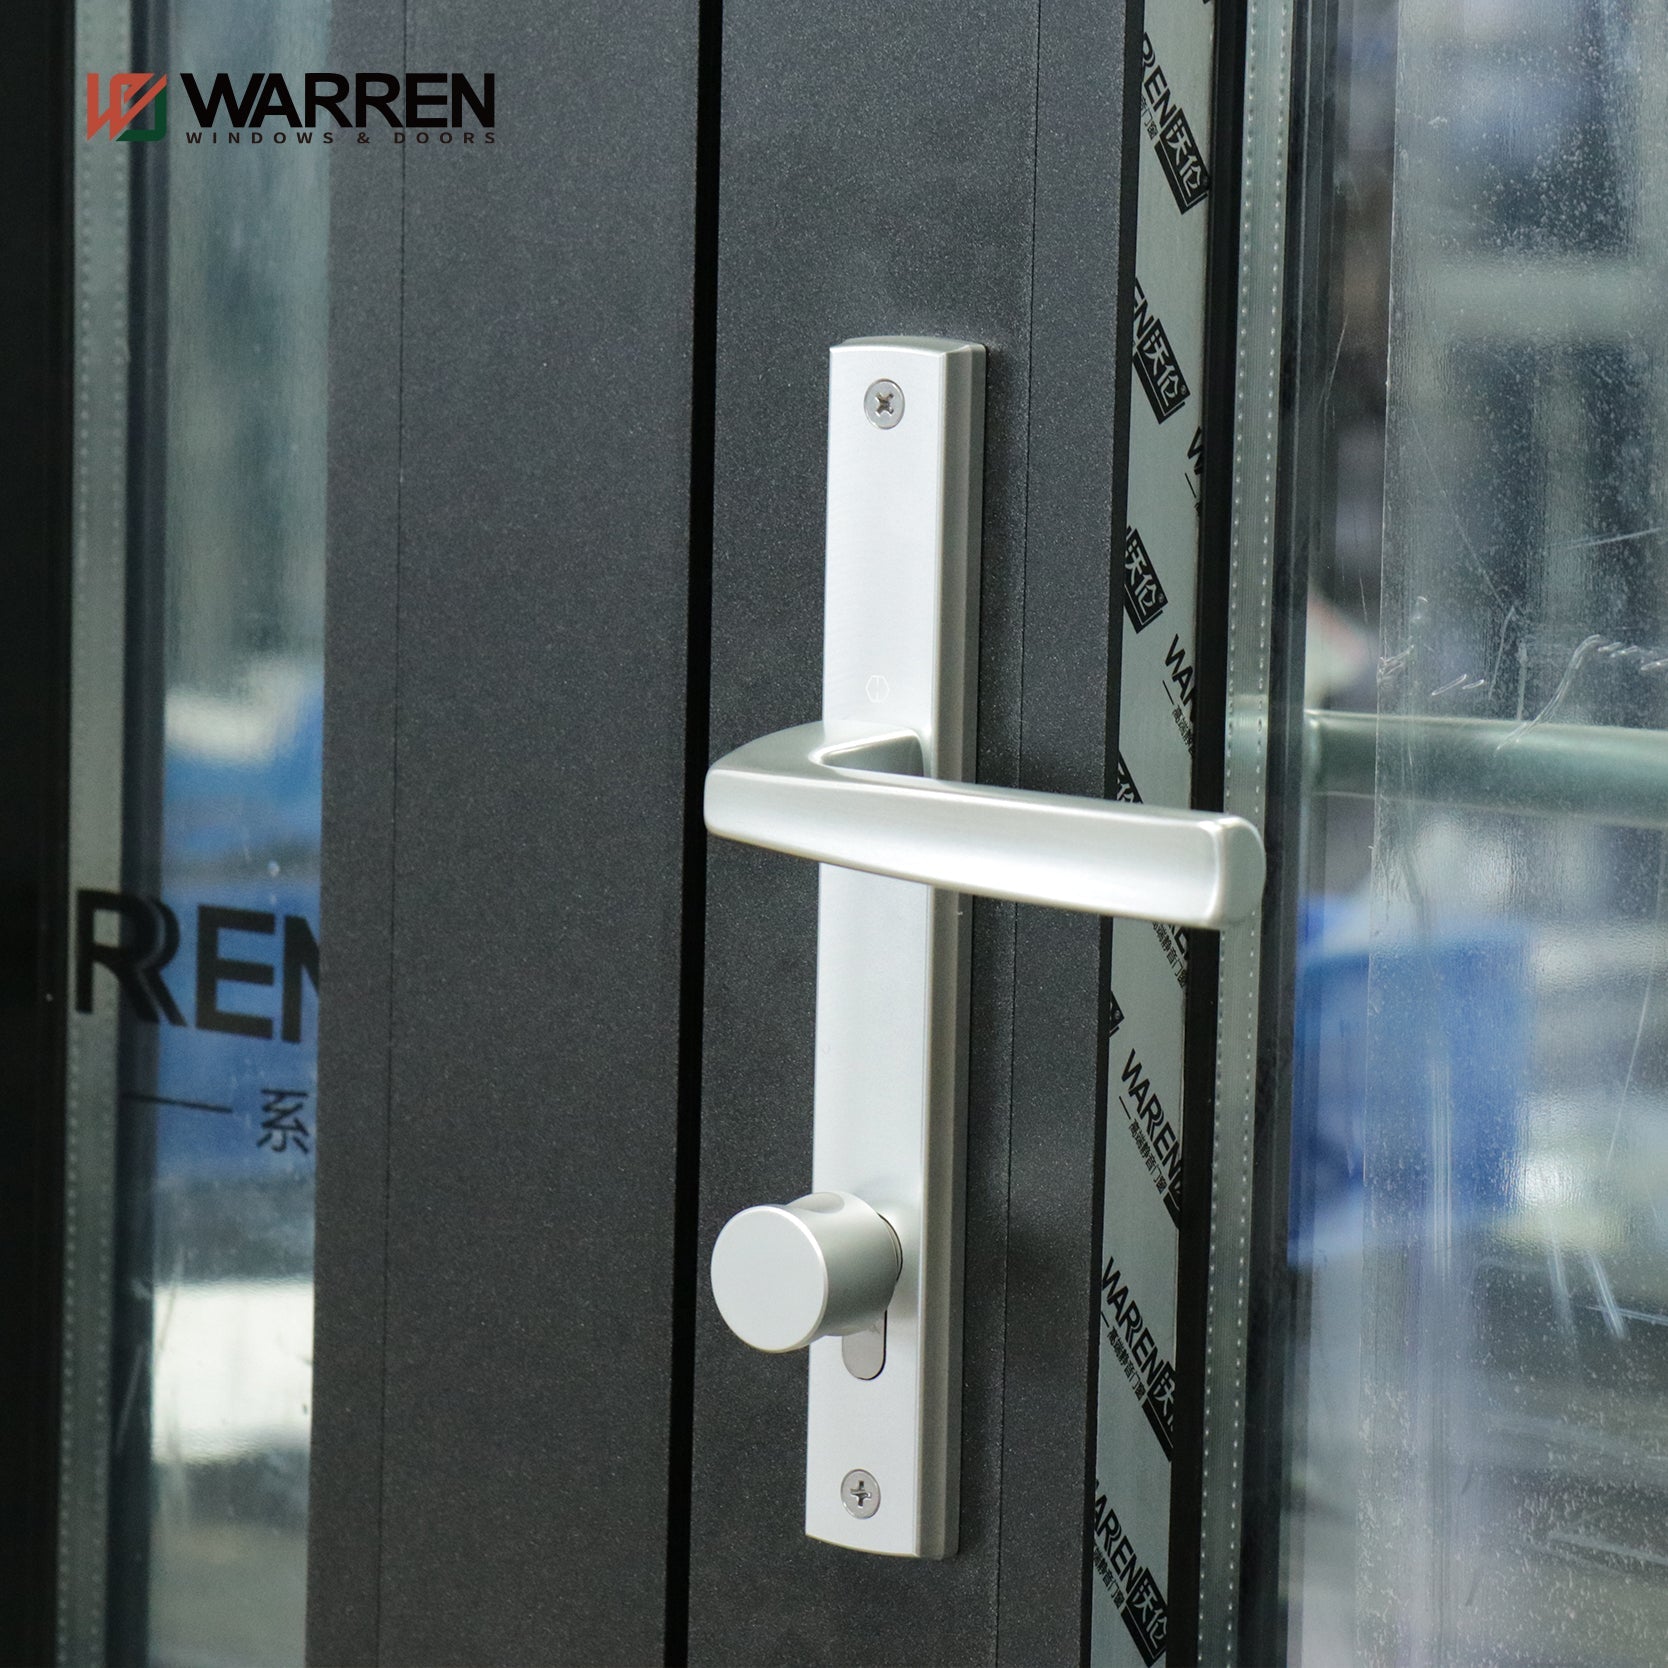 Commercial Aluminum Soundproof Double Glass French Doors Glass Door Asymmetric Design Aluminum Door